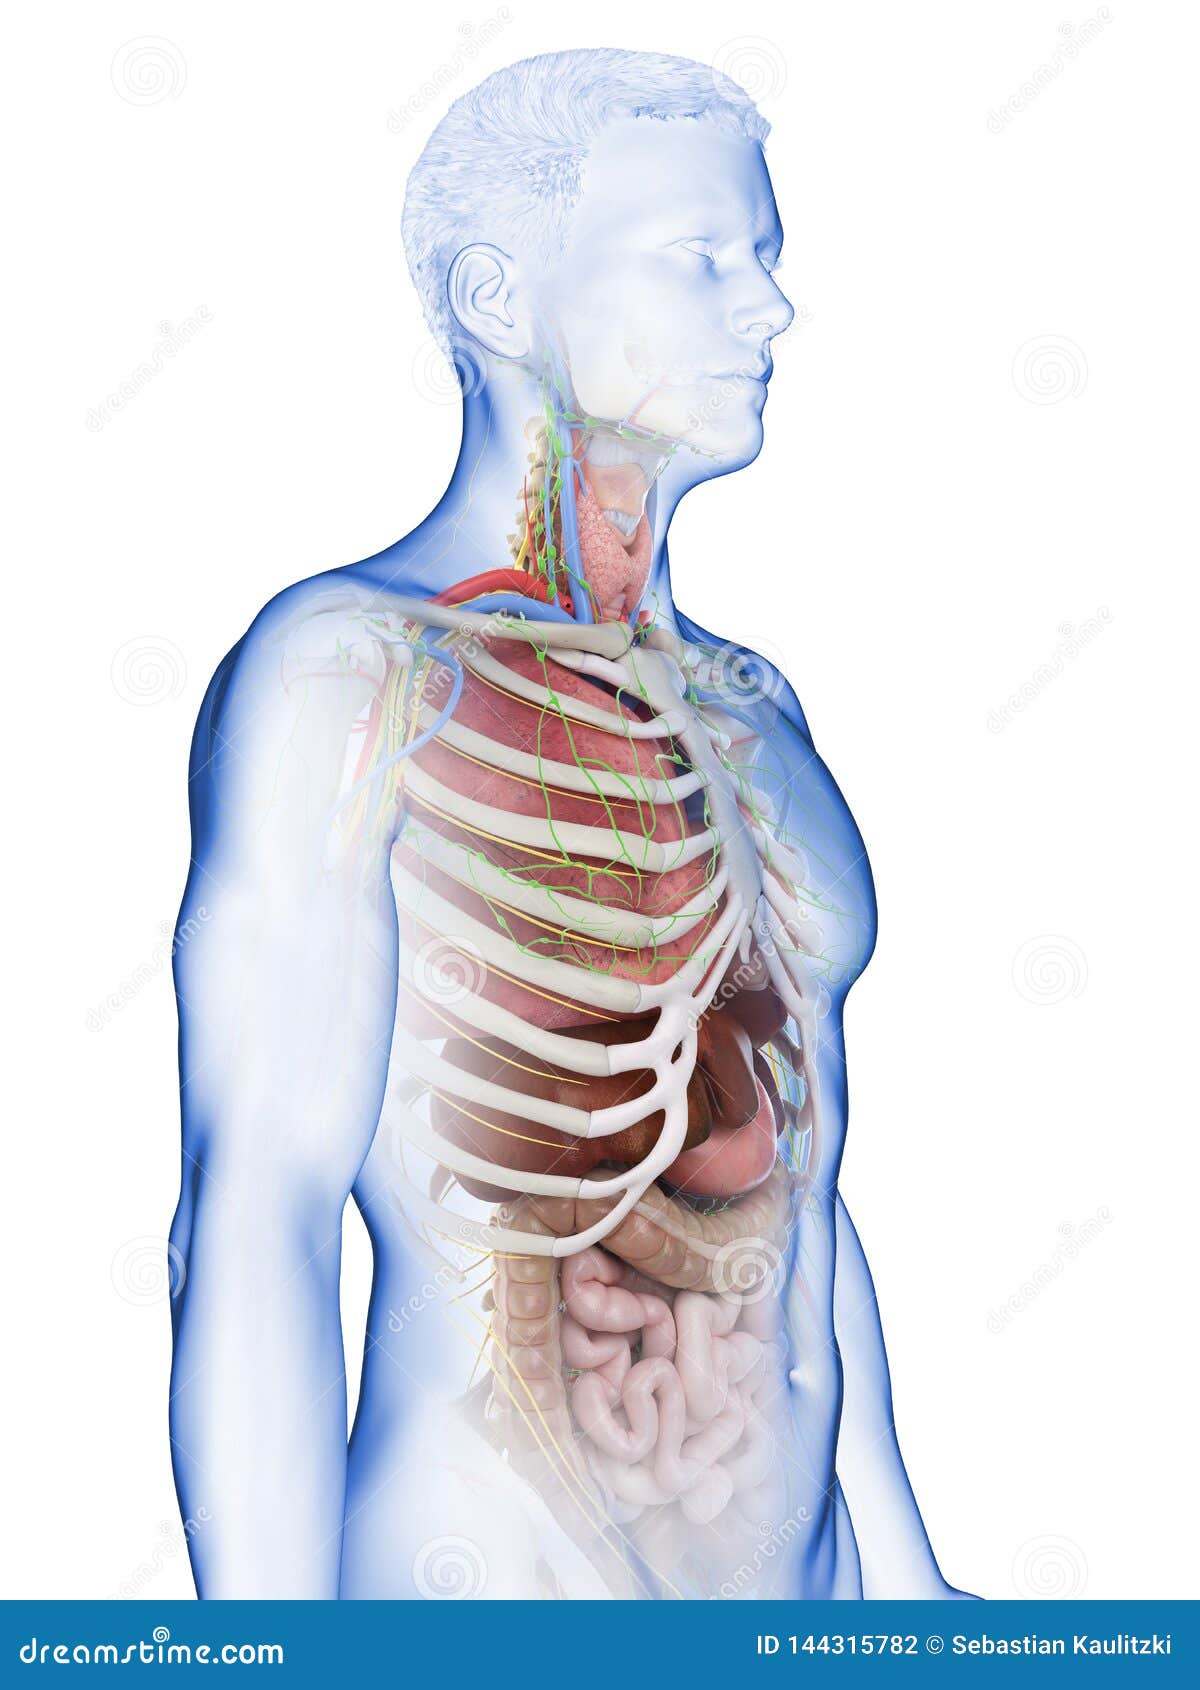 A mans internal organs stock illustration. Illustration of anatomy